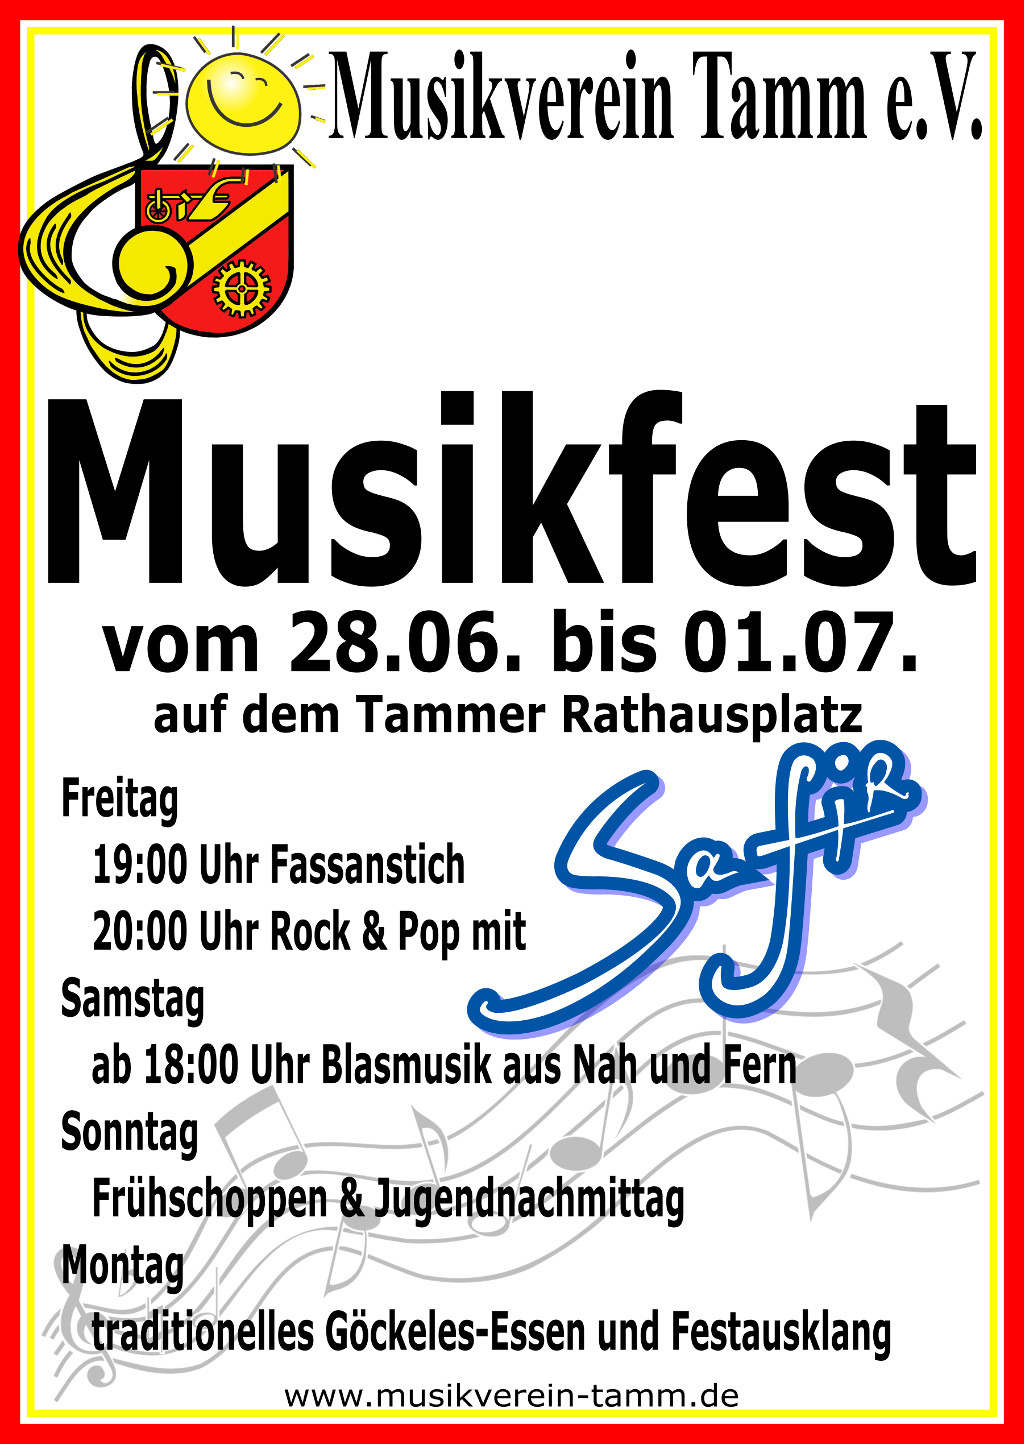 Musikfest 2019 vom 28.06. - 01.07. auf dem Tammer Rathausplatz